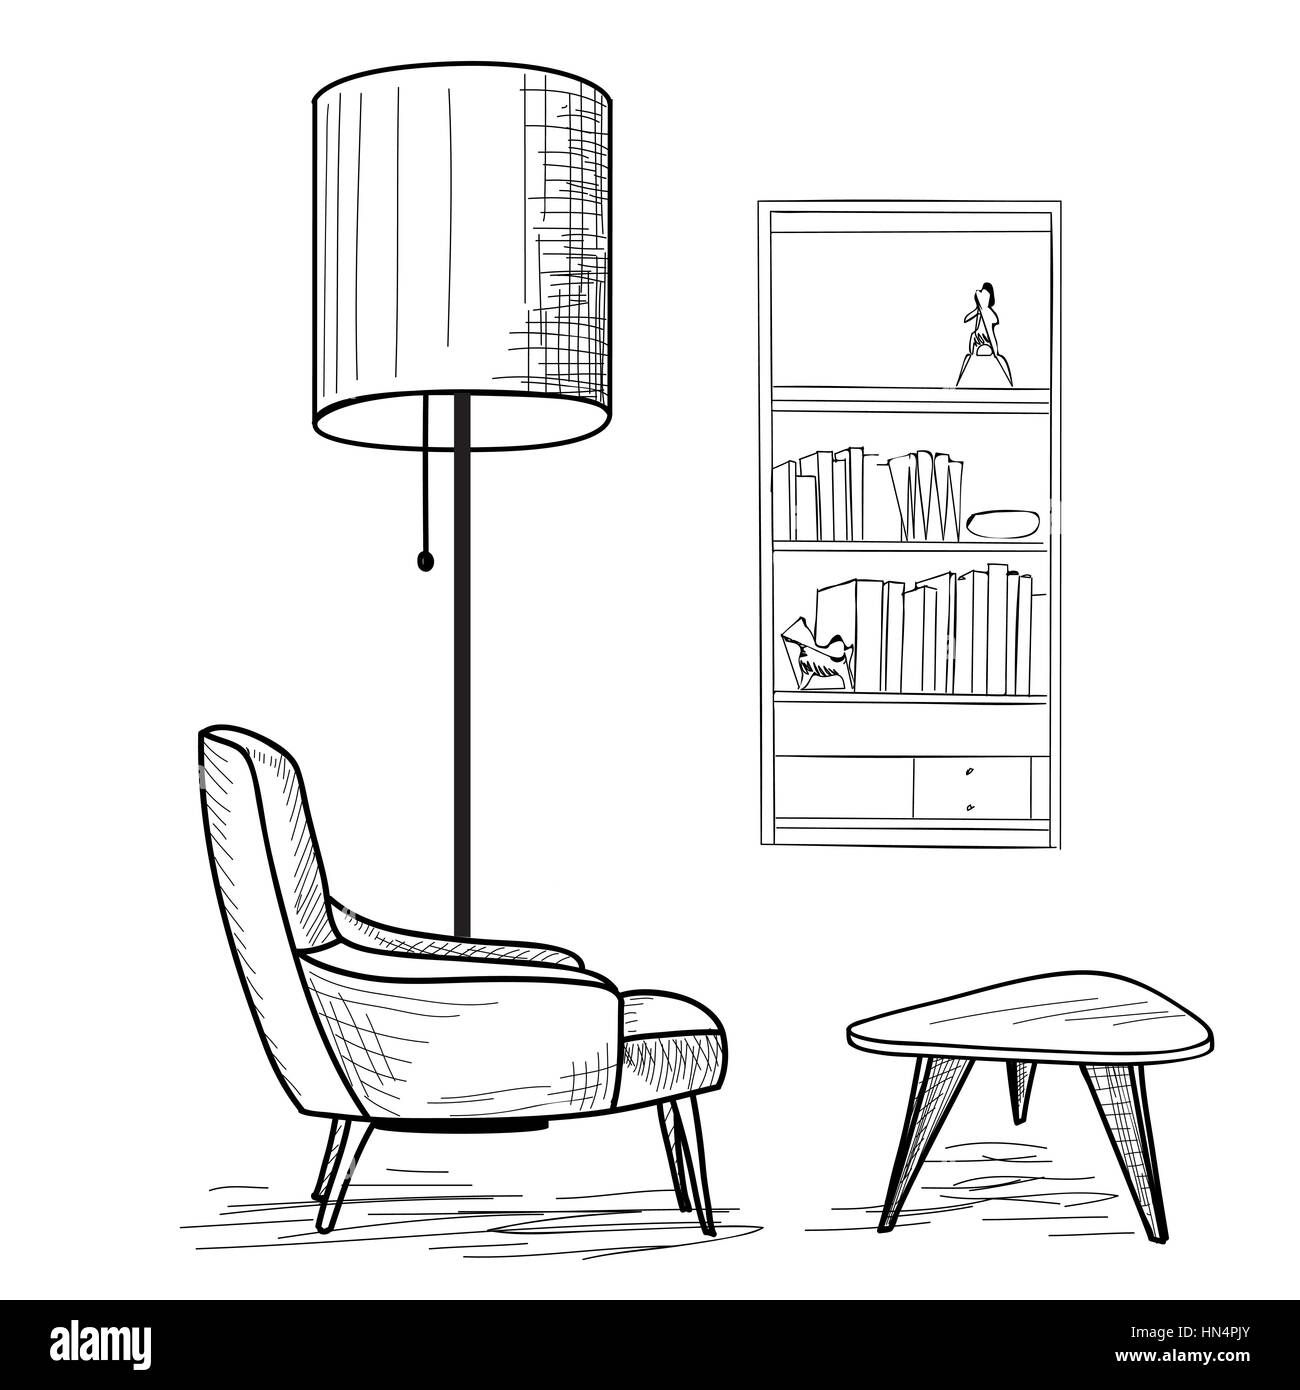 Die Gestaltung des Innenraums der Wohnraum mit Sessel, Tisch, Regal und Stehleuchte. Lounge Konzept Interieur.. flache klassische, moderne Möbel Design in 196 Stock Vektor